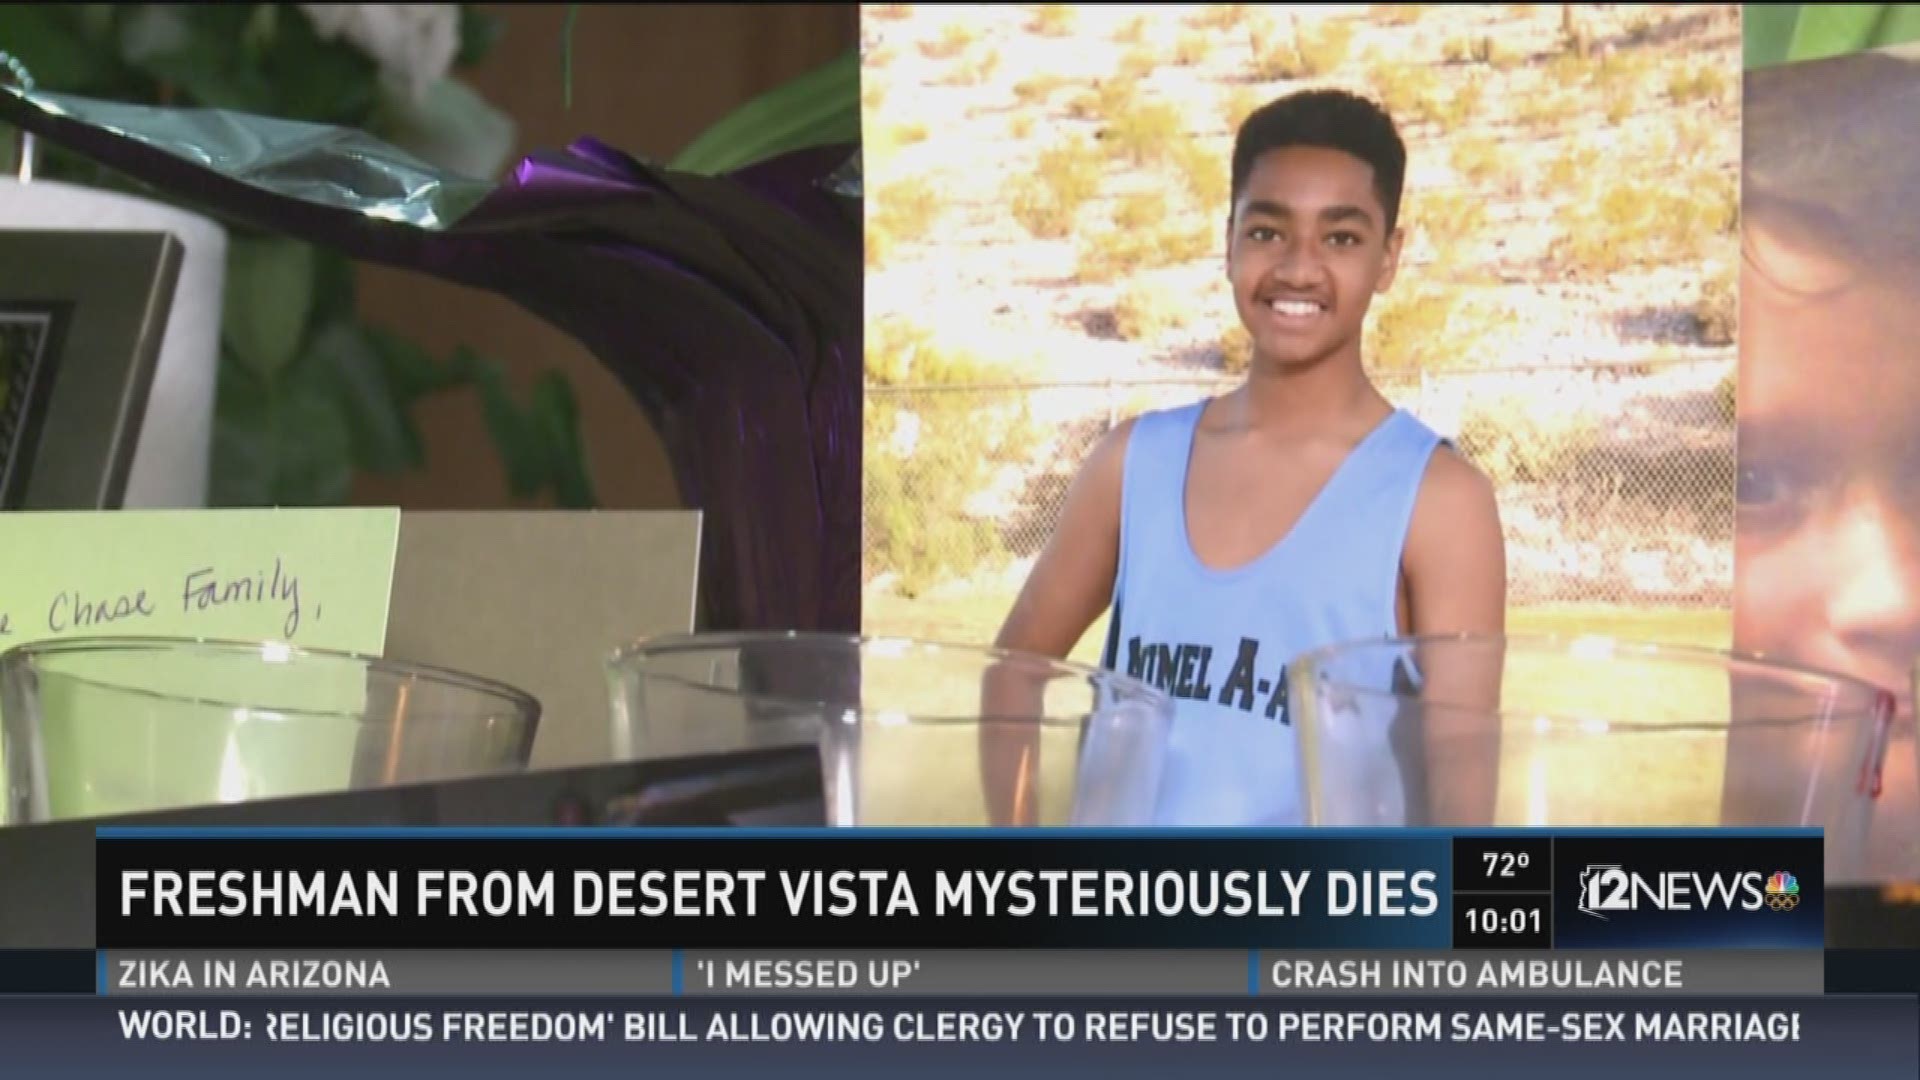 Freshman from desert vista mysteriously dies.